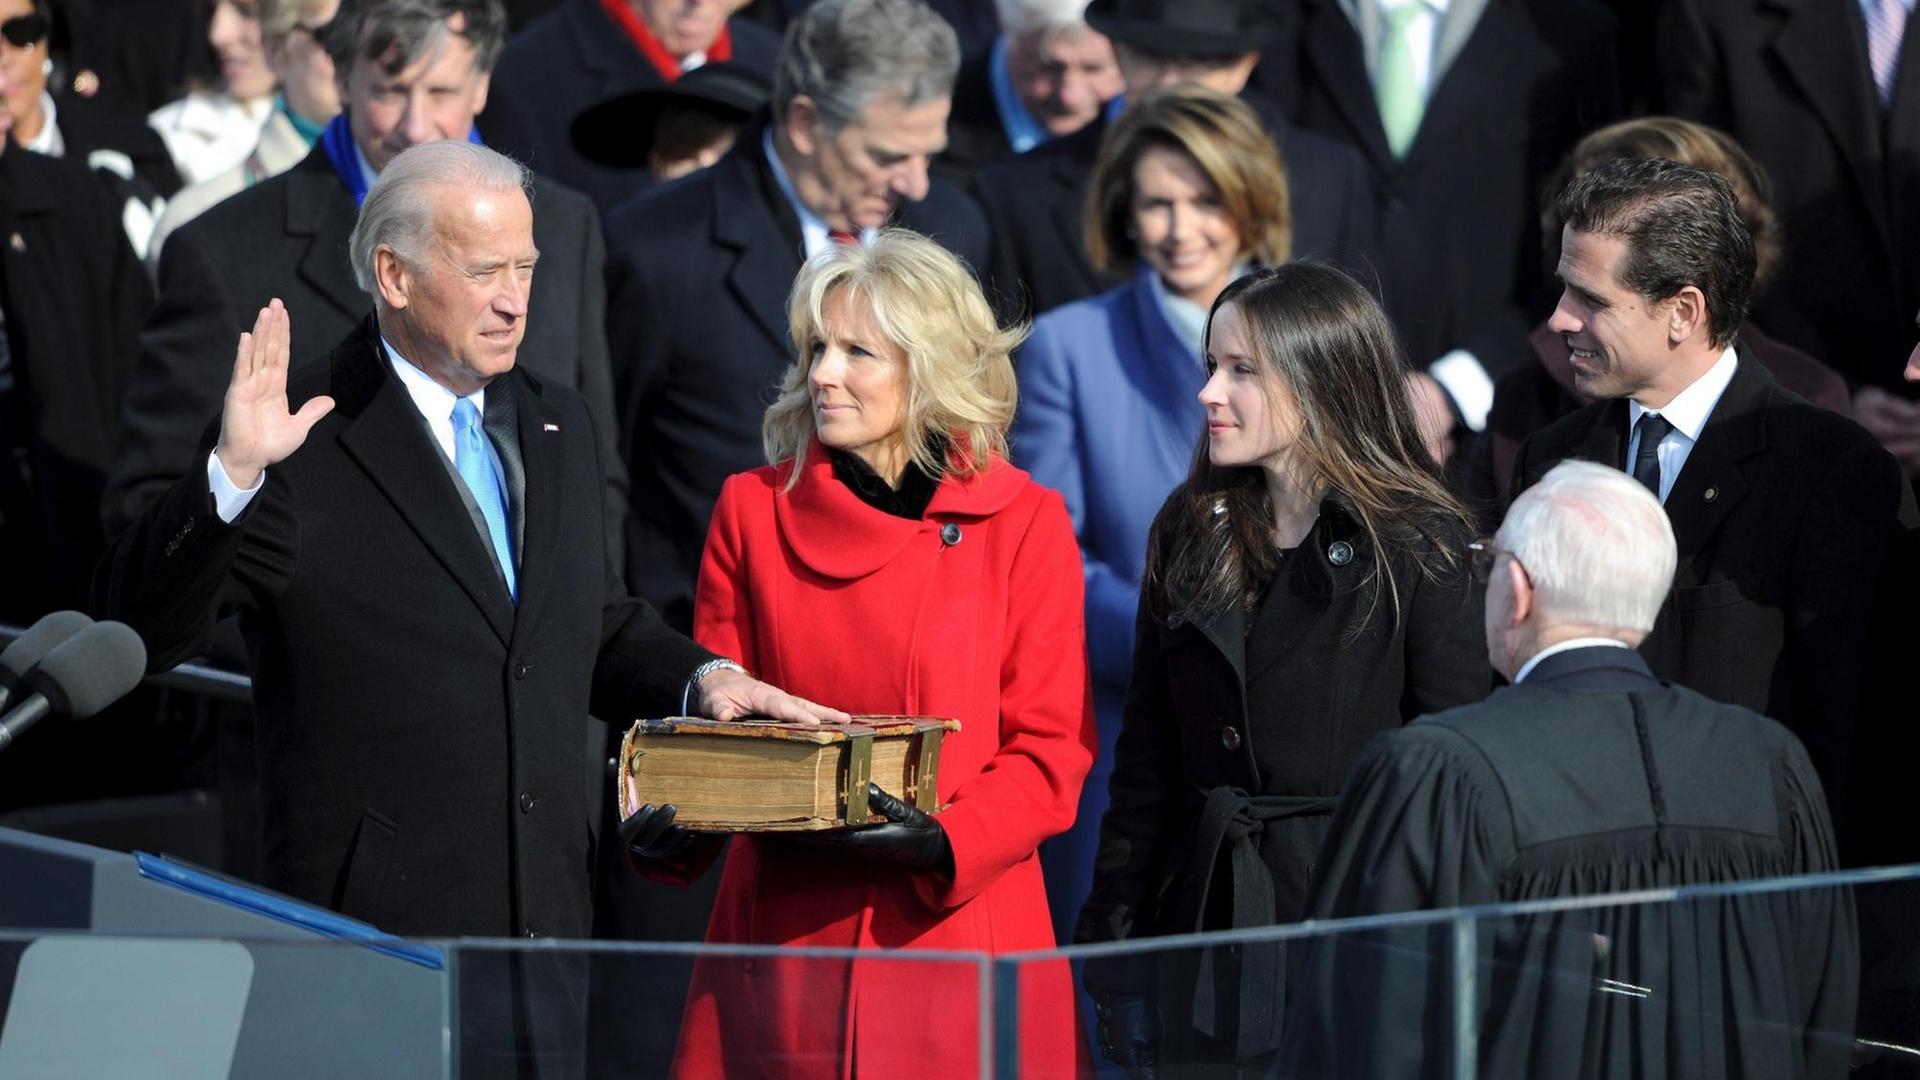 Joe Biden schwört seinen Amtseid als Vizepräsident im Jahr 2009. Zu seiner Rechten steht seine Frau Jill und die Familie.